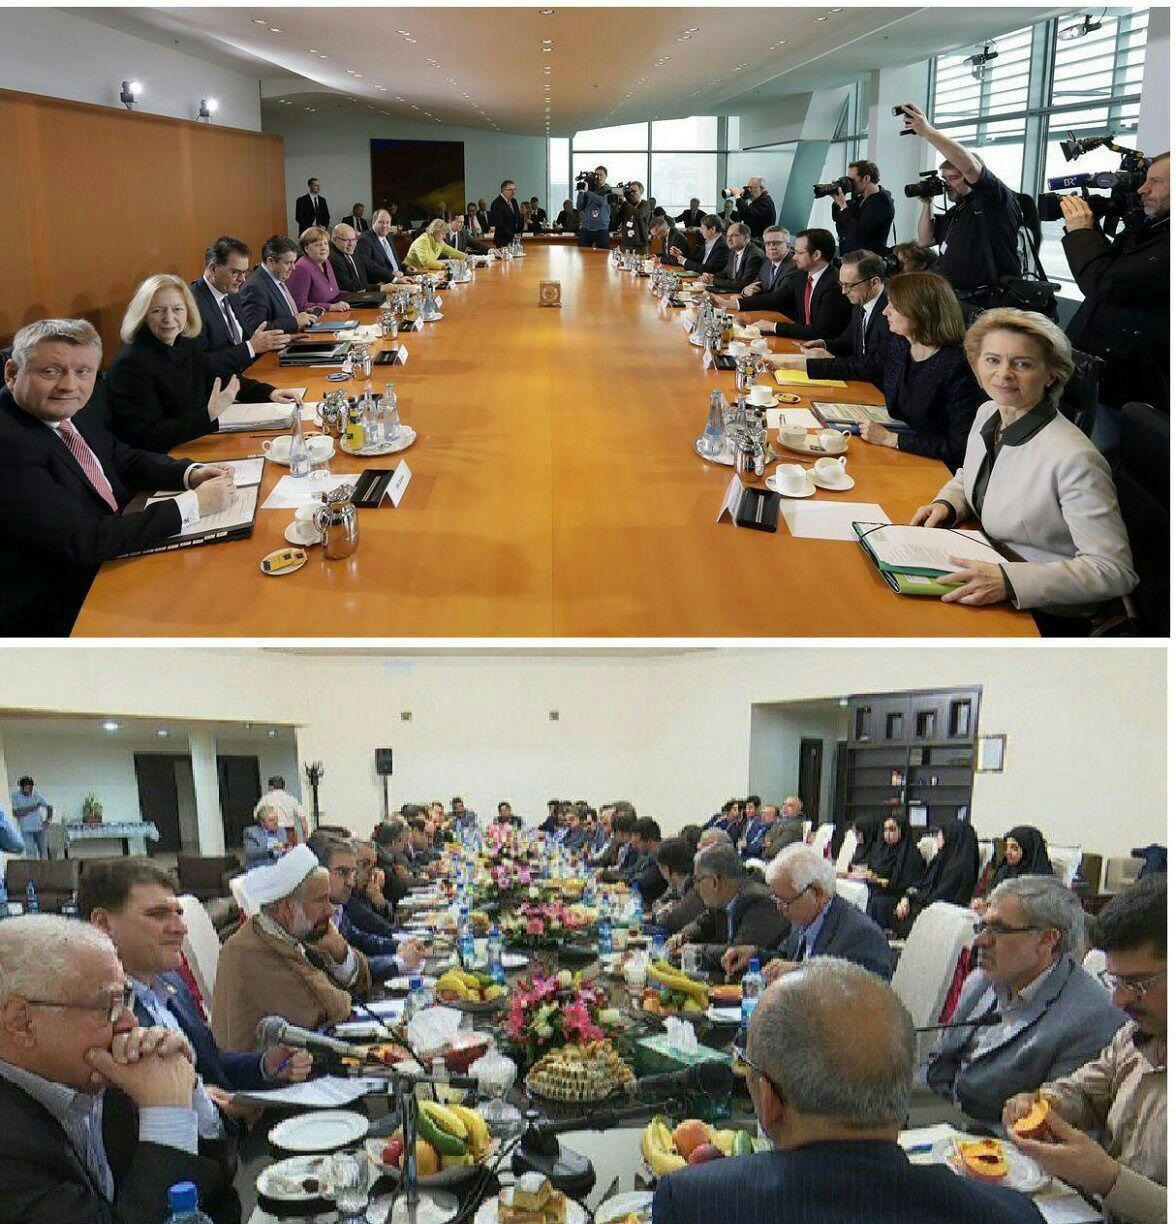 مقایسه دو جلسه کاری در آلمان و ایران